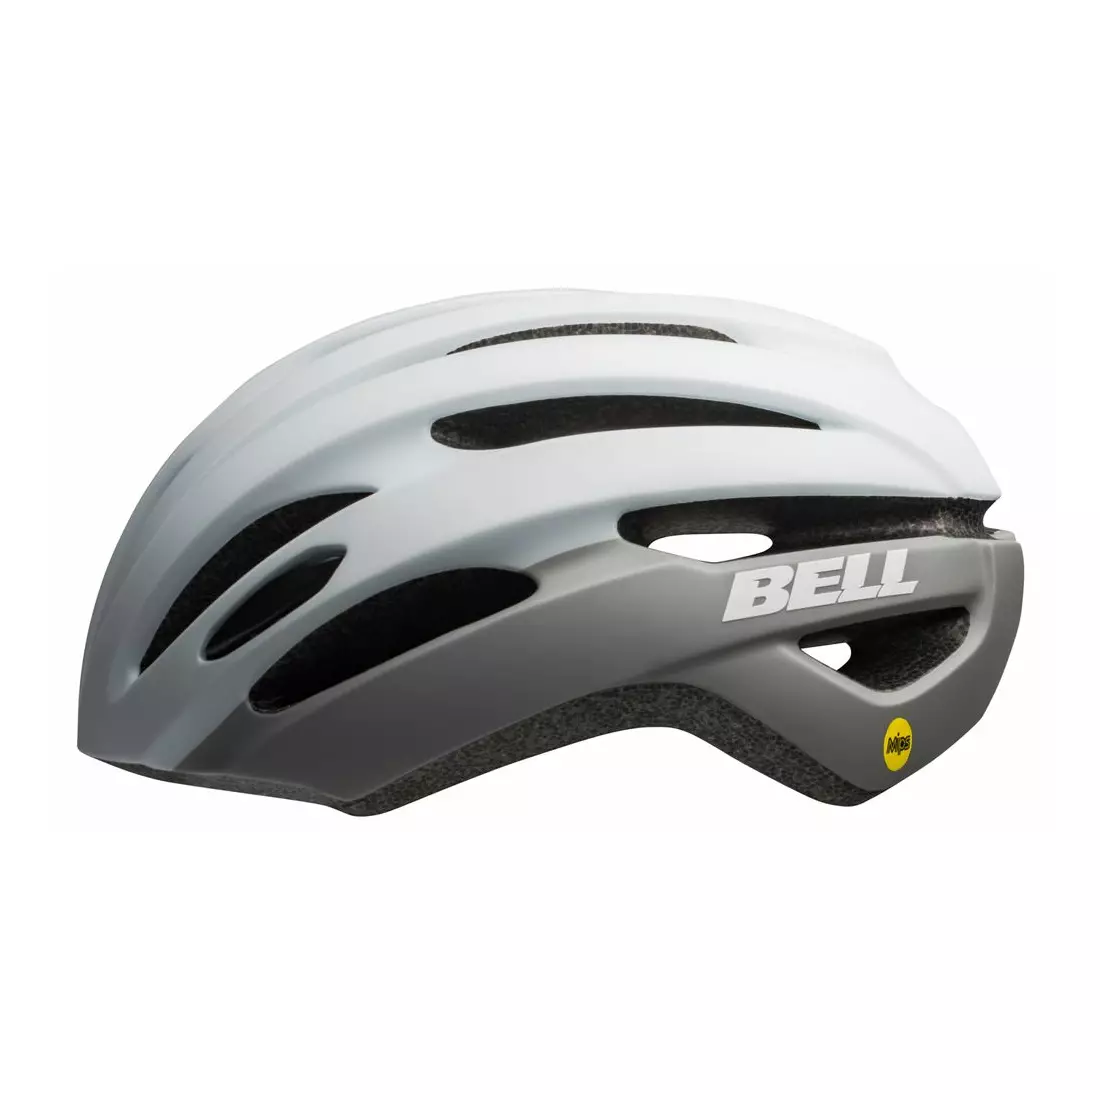 BELL road bike helmet avenue matte gloss white gray BEL-7115260